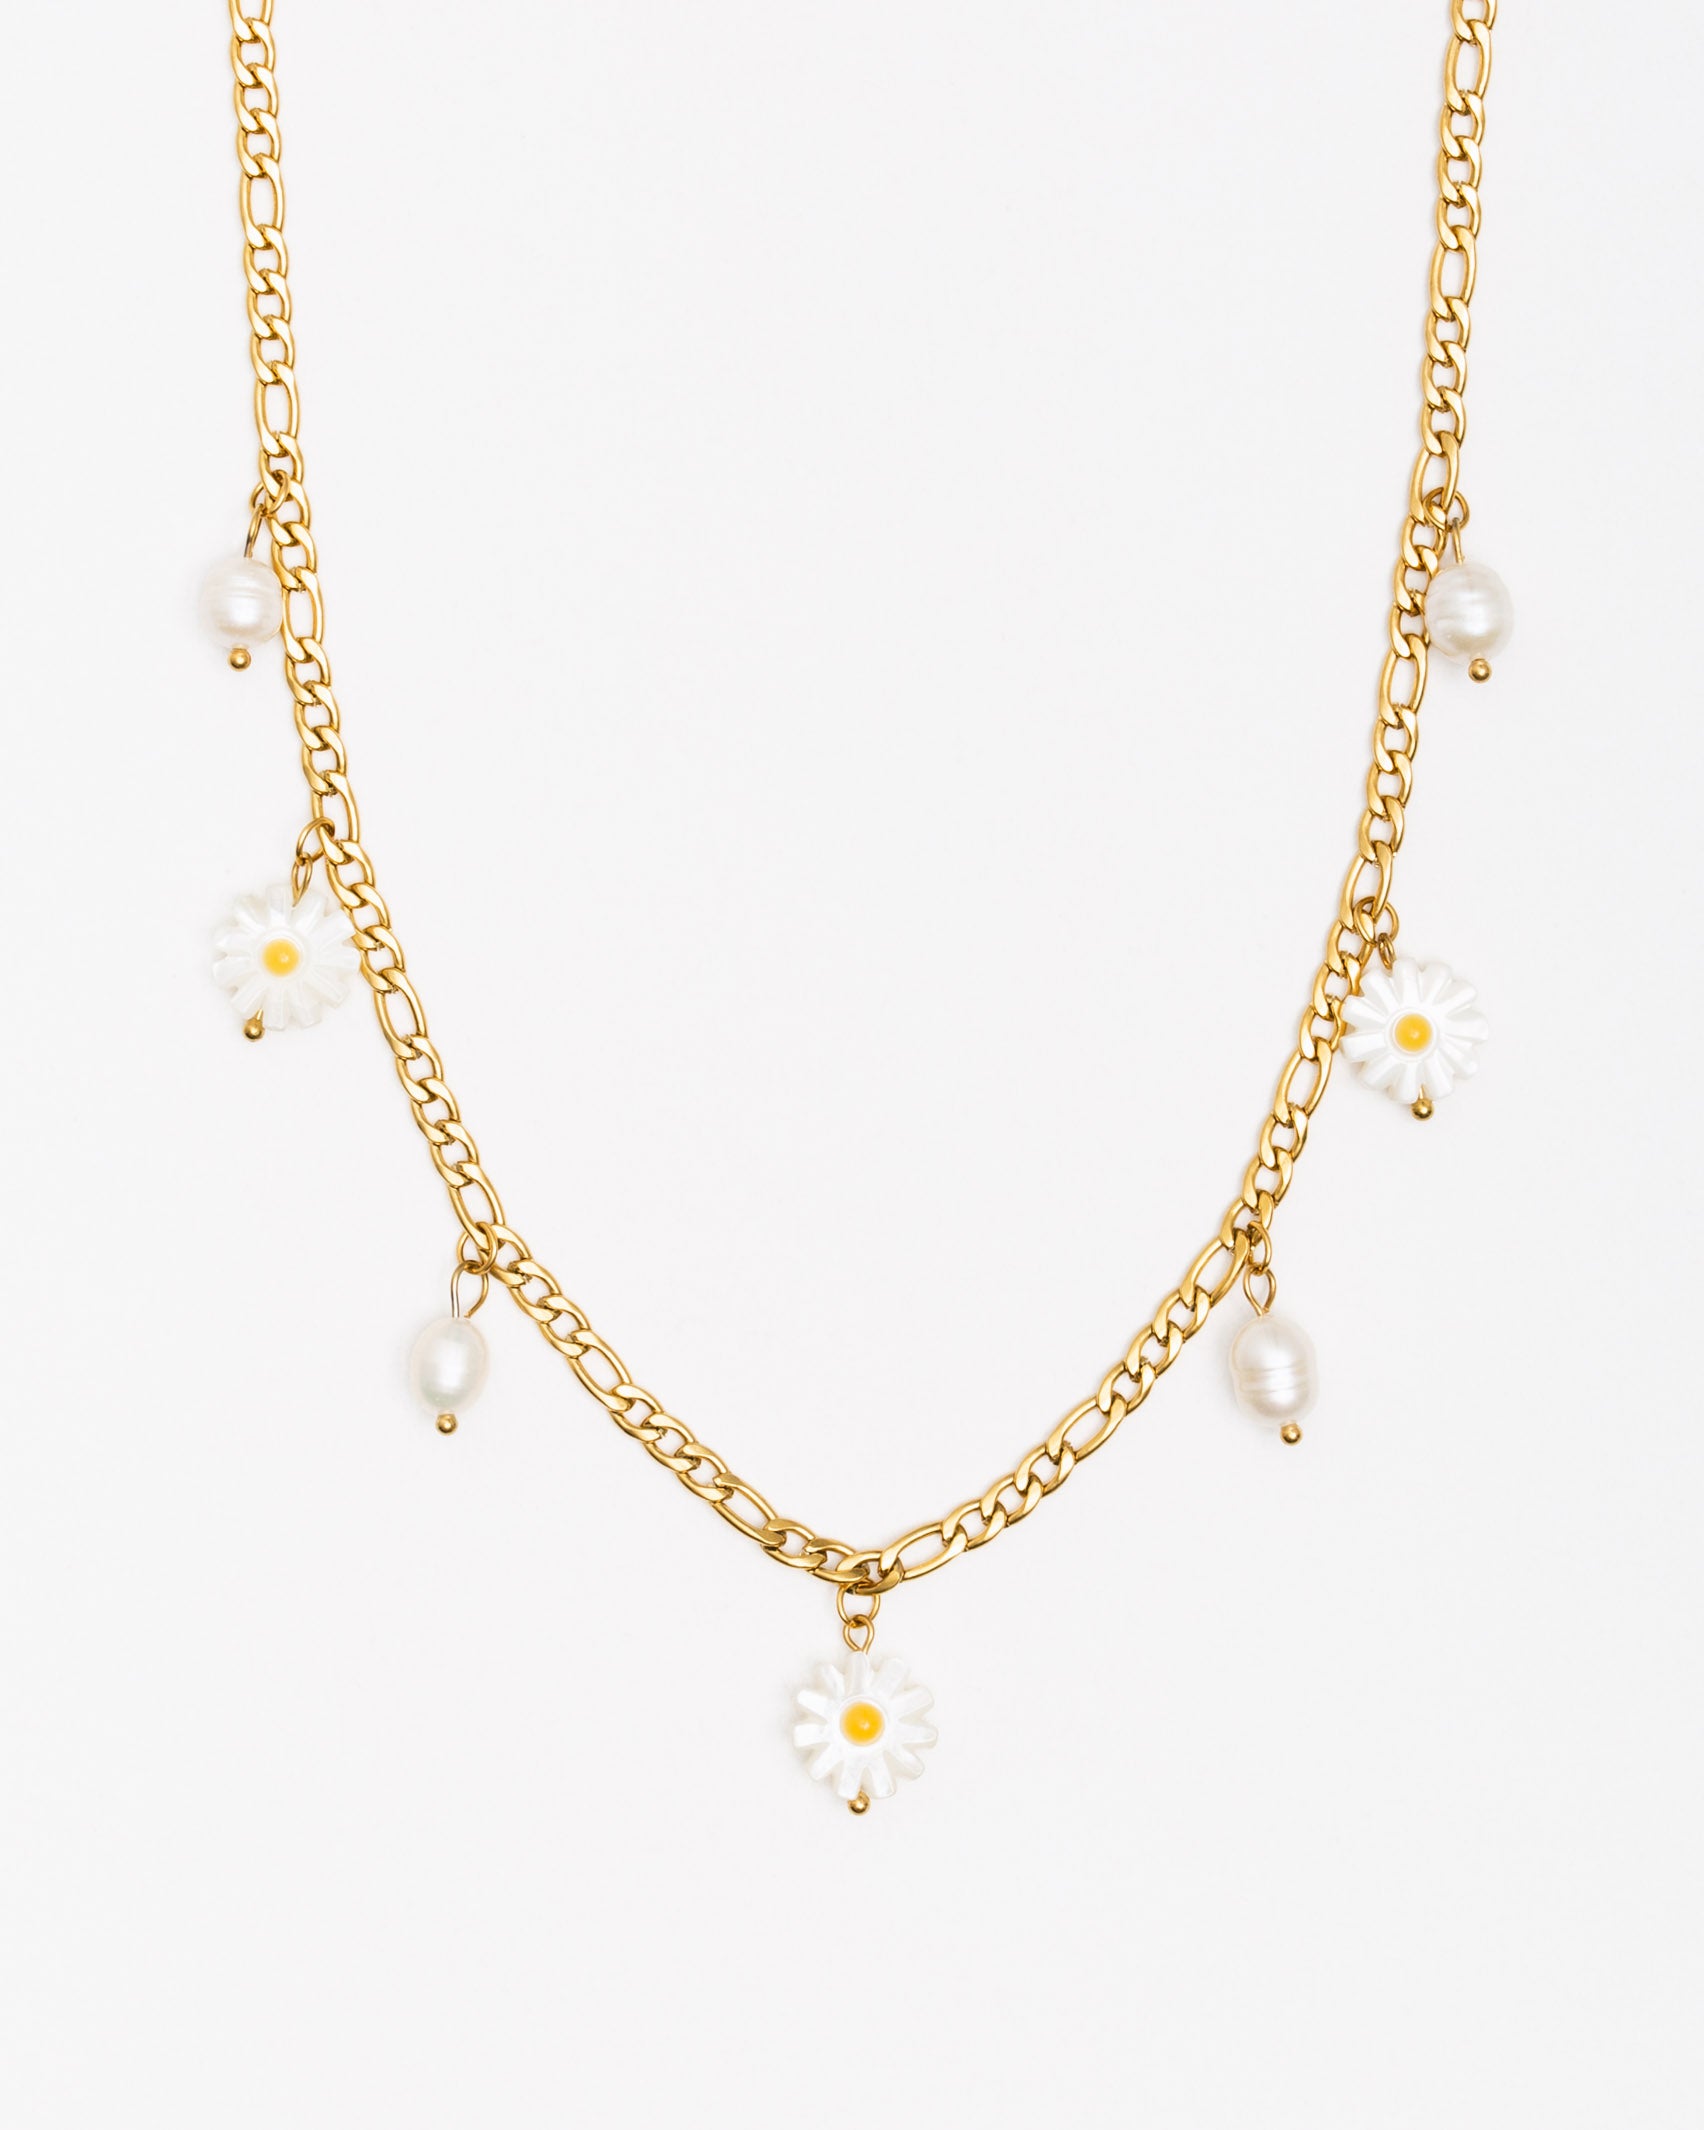 Flache Gliederkette mit Gänseblümchen Perlen - Broke + Schön#farbe_gold-colored